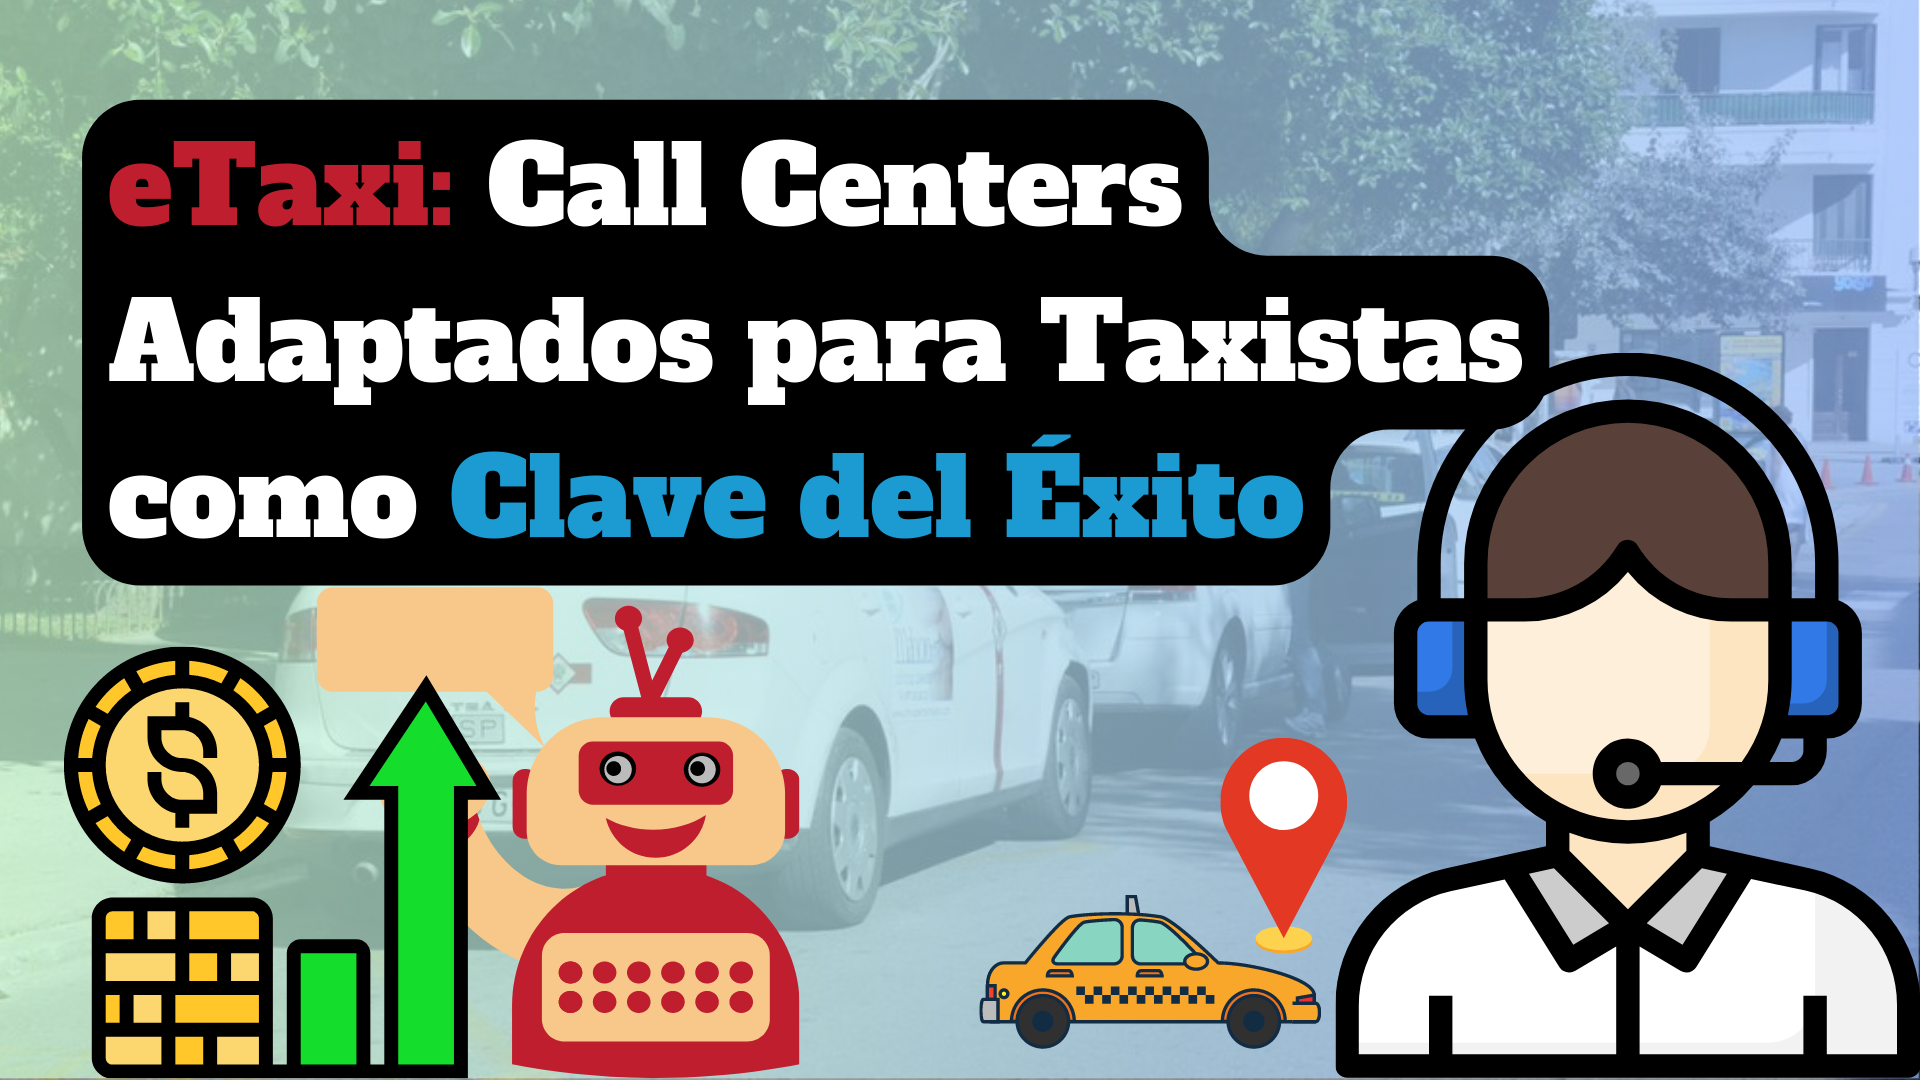 La Revolución del Taxi: Call Centers Adaptados para Taxistas como Clave del Éxito